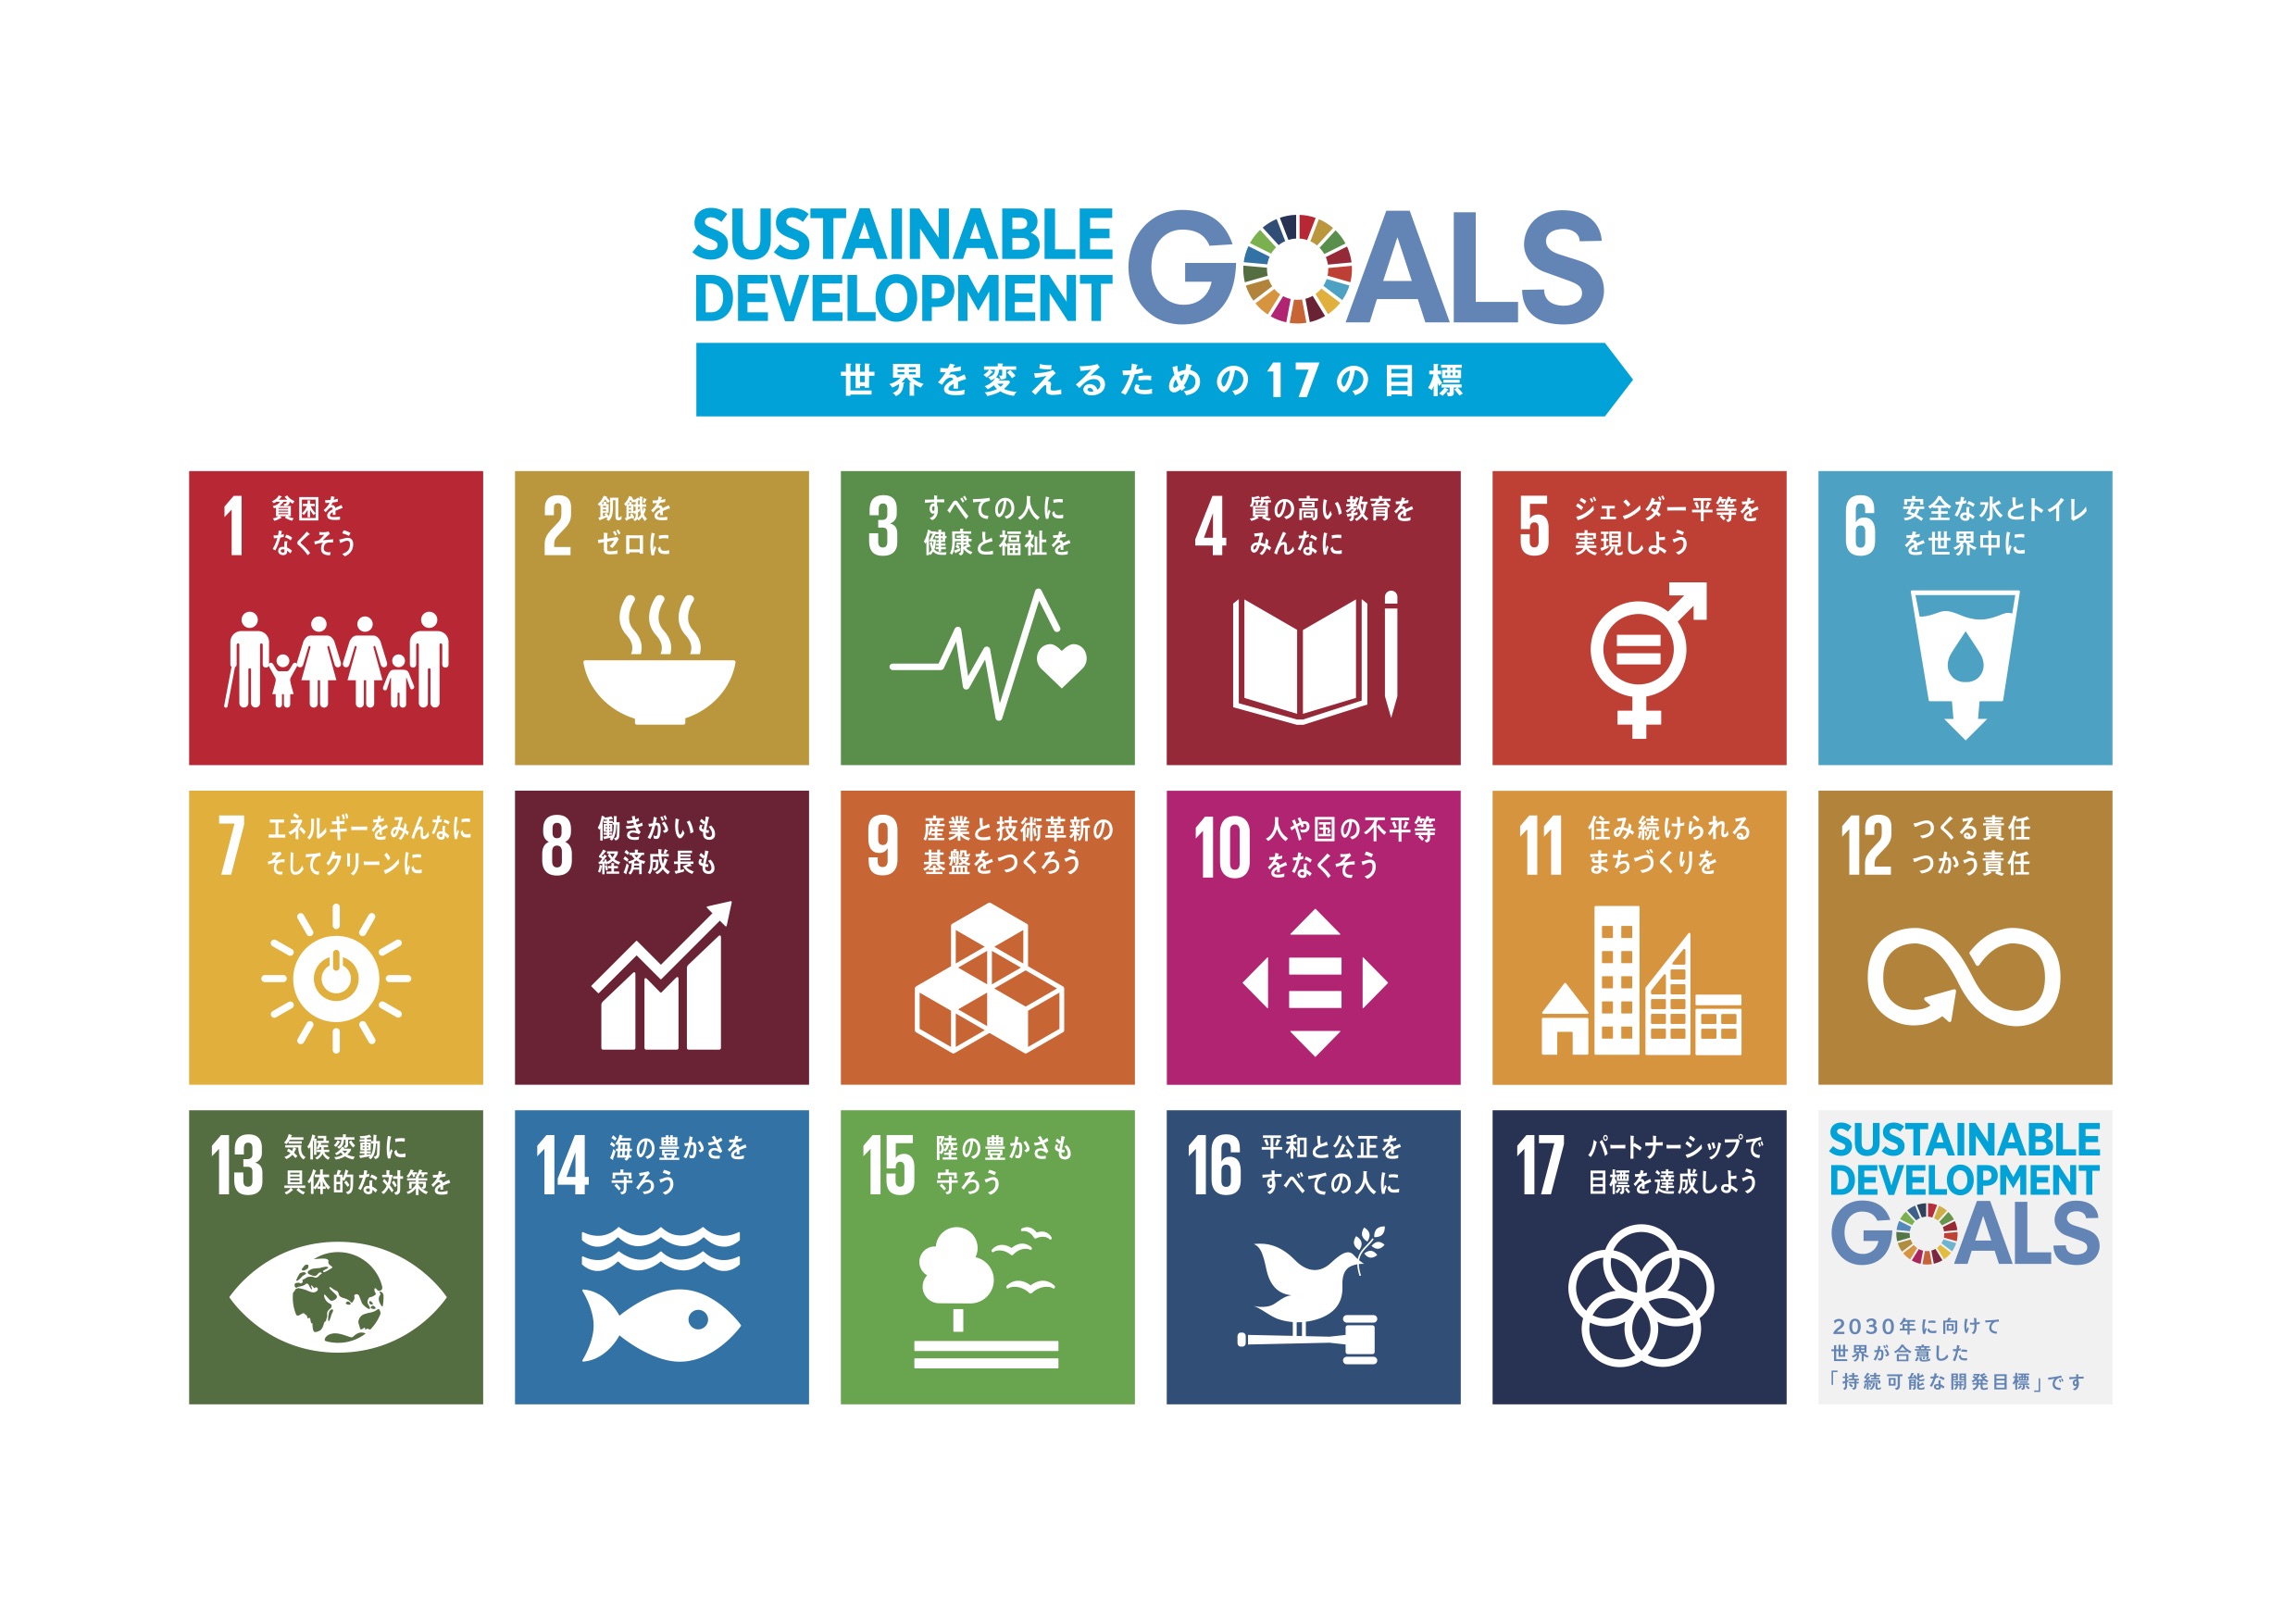 書籍「未来を変える目標 SDGsアイデアブック」のご紹介 おてらおやつクラブ たよってうれしい、たよられてうれしい。